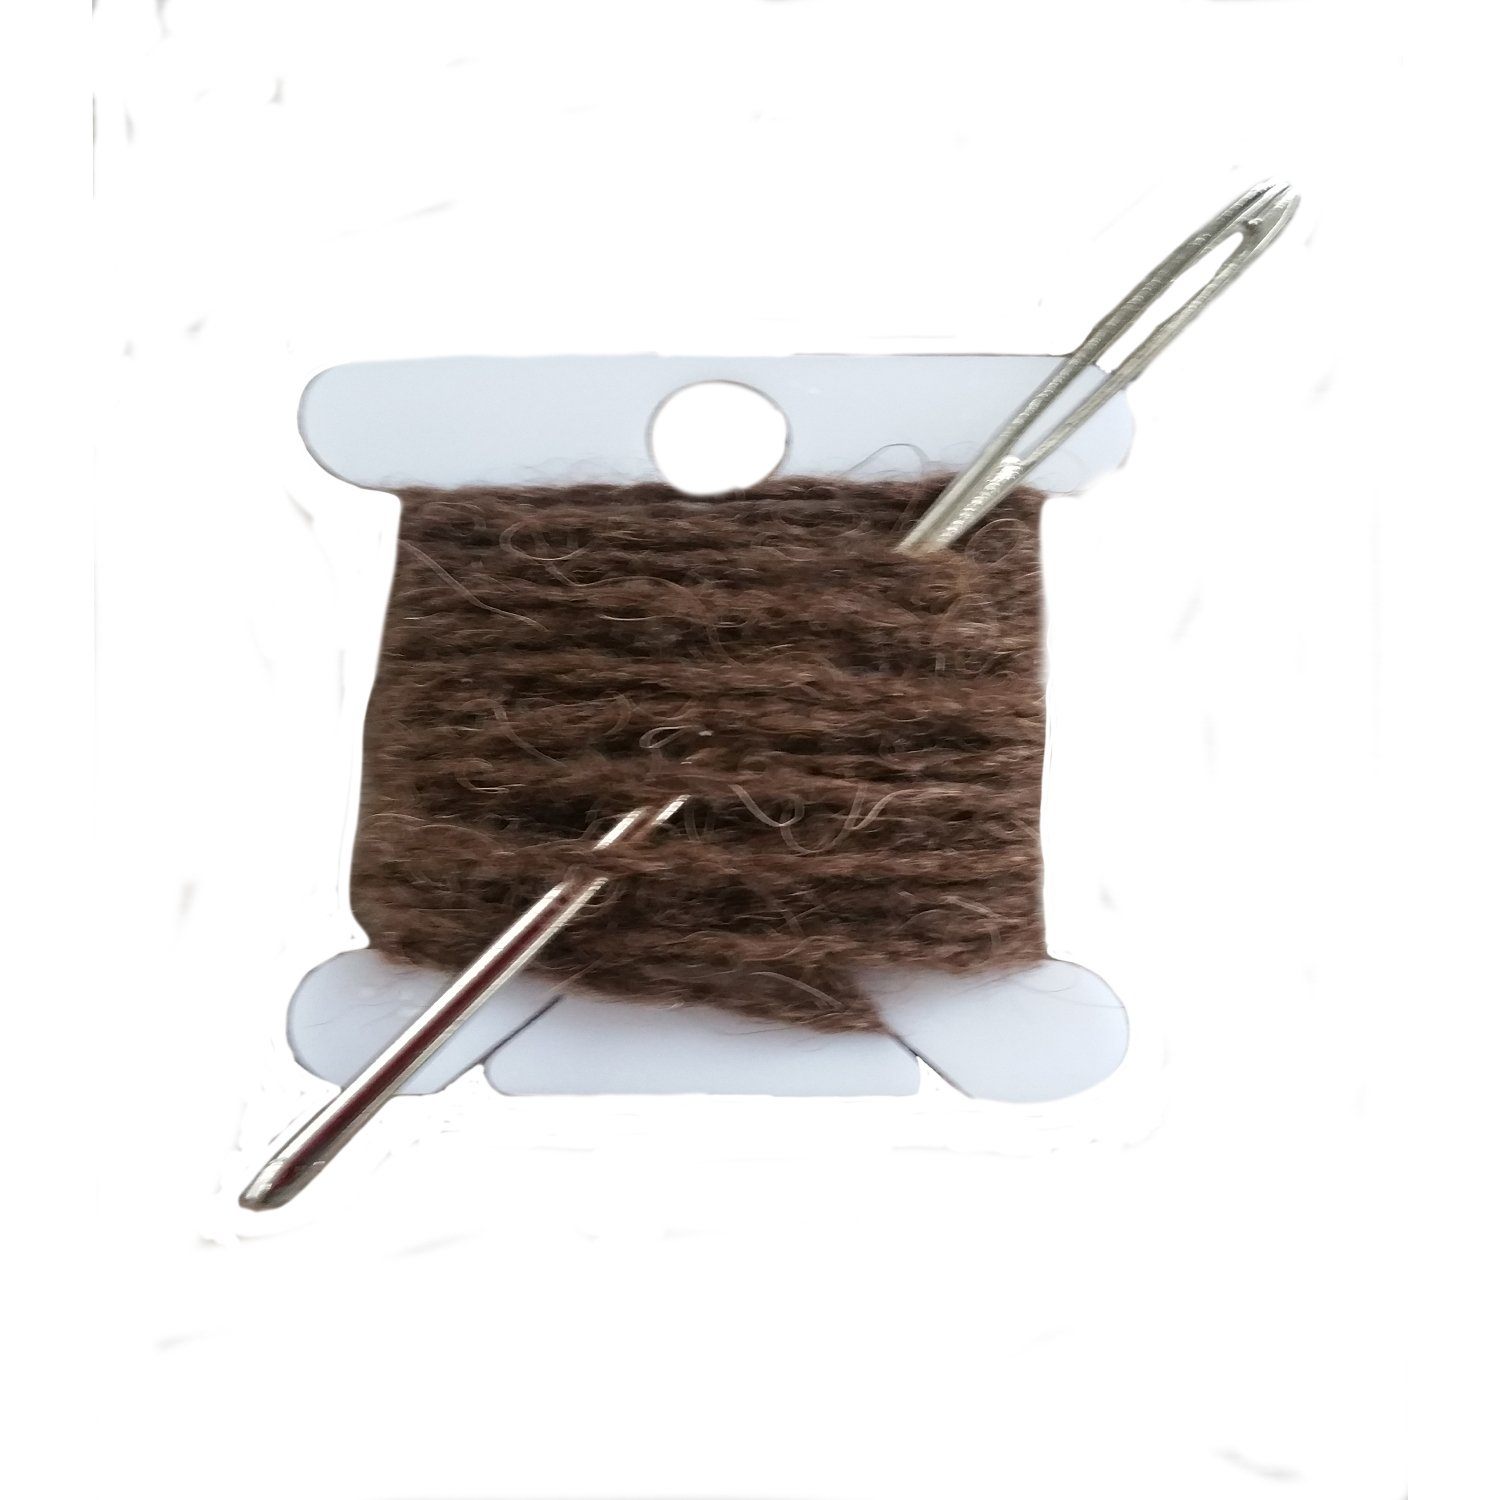 Wool Darning Kit